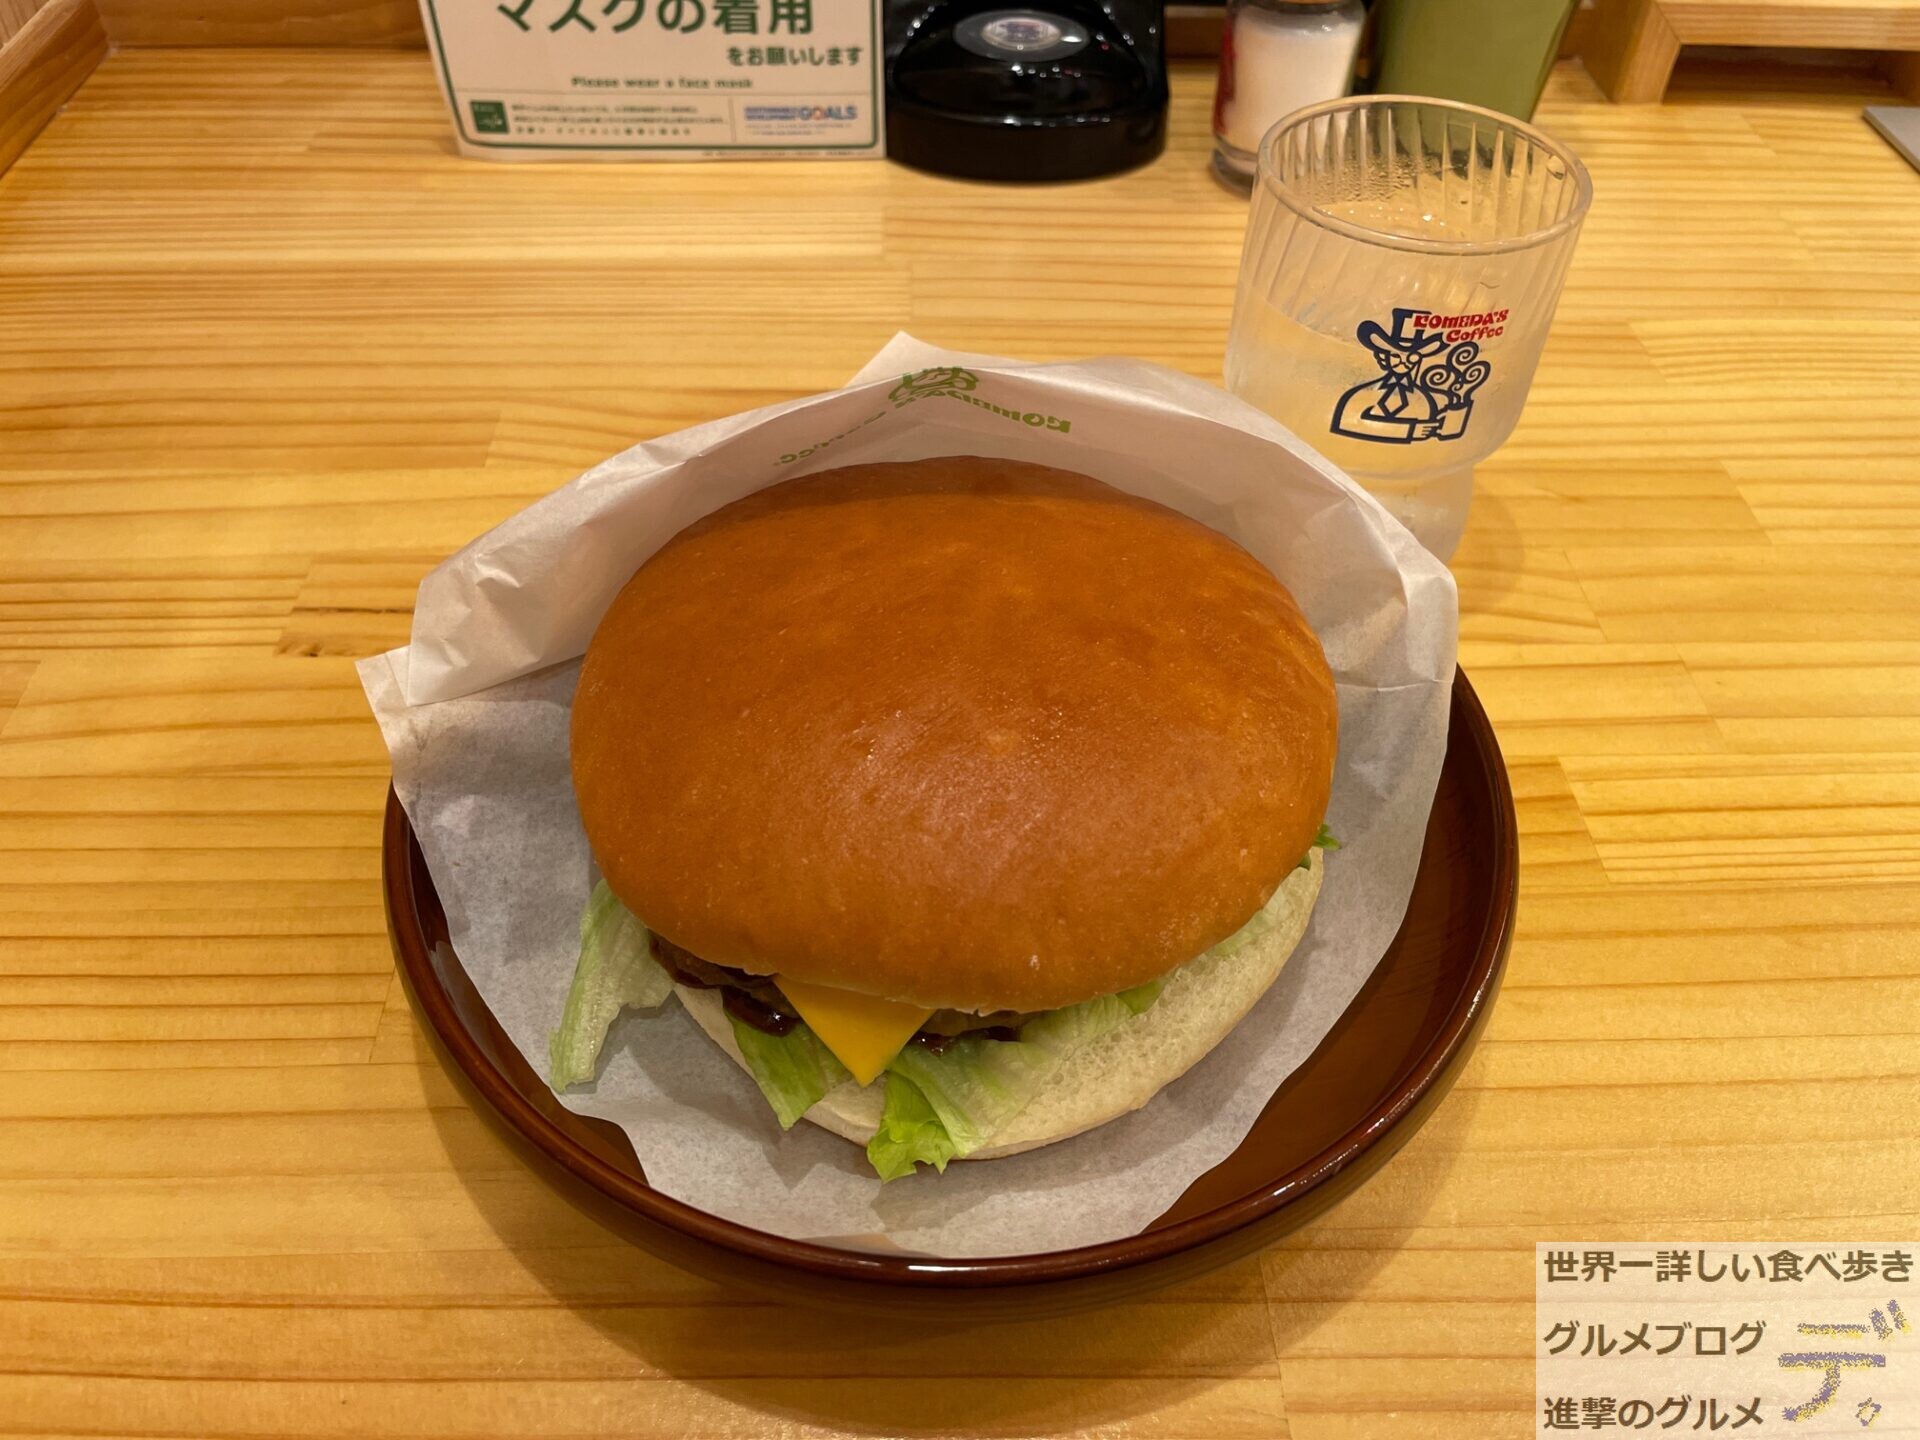 コメダ珈琲店のハンバーガーメニュー全4種類を紹介 進撃のグルメ Yahoo Japan クリエイターズプログラム